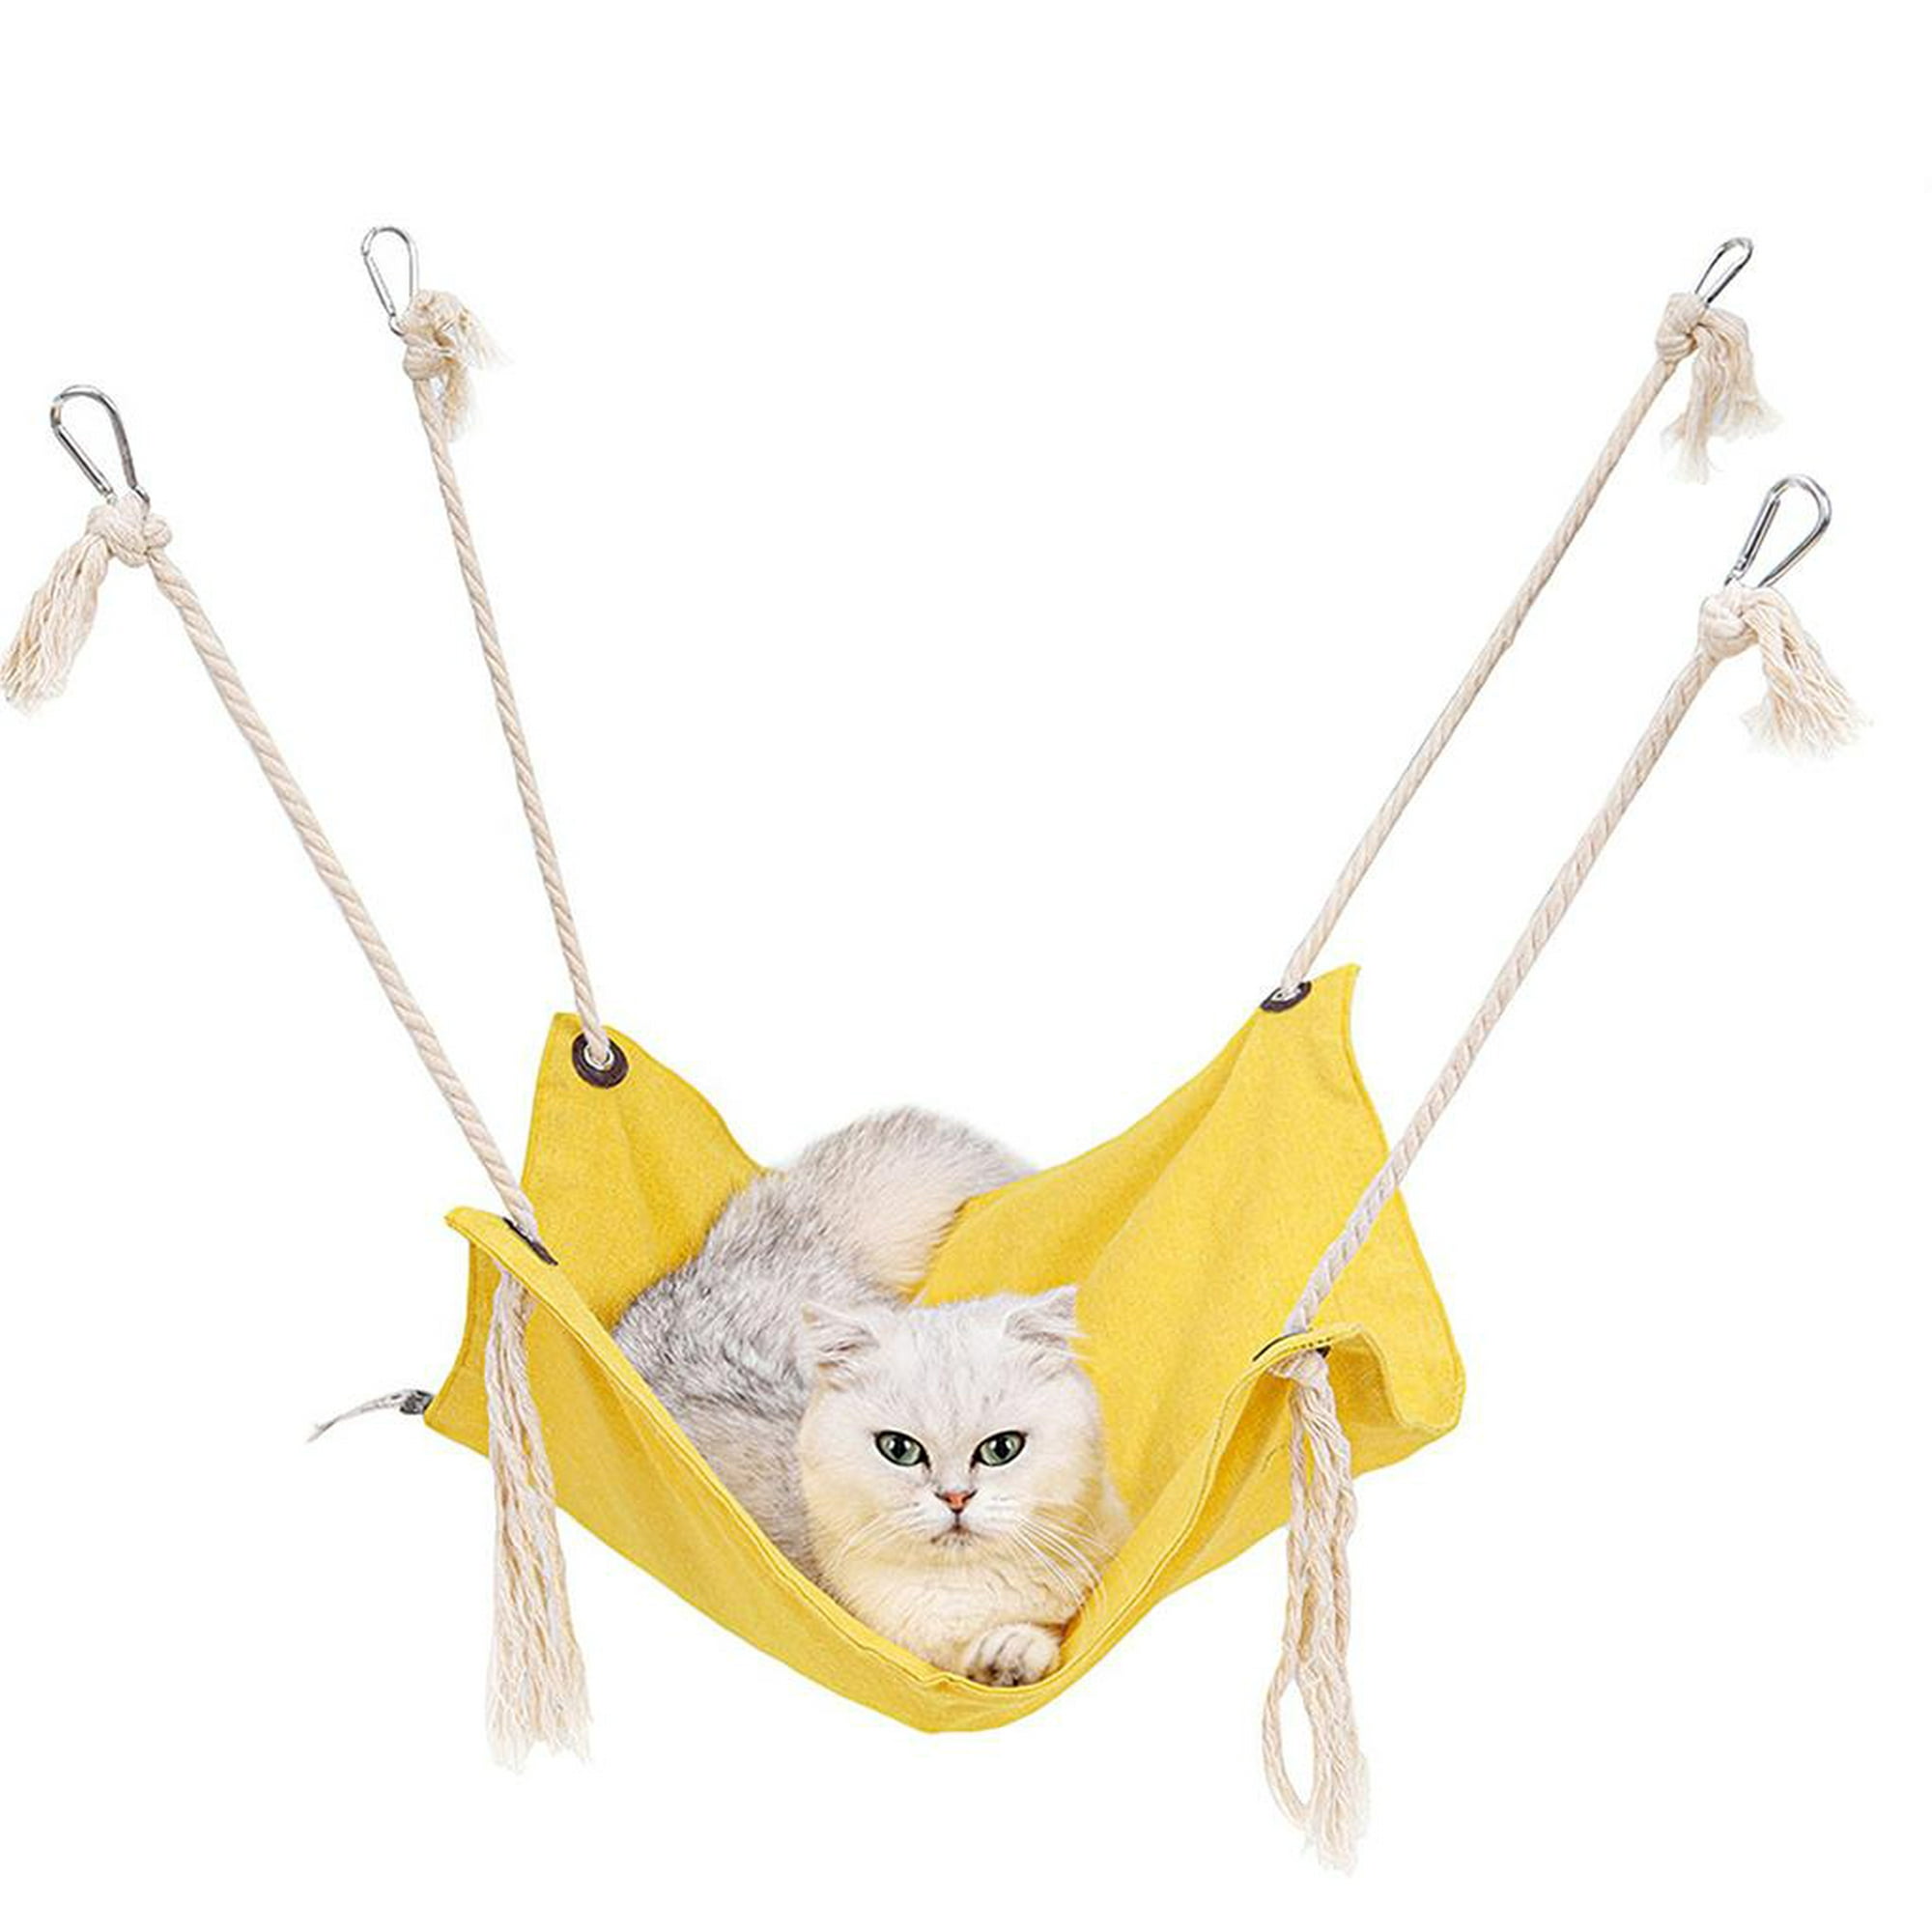 Cateissary Hamaca transpirable gatos, de algodón, hamaca para gatos, colgante de lin Cateissary | Walmart línea